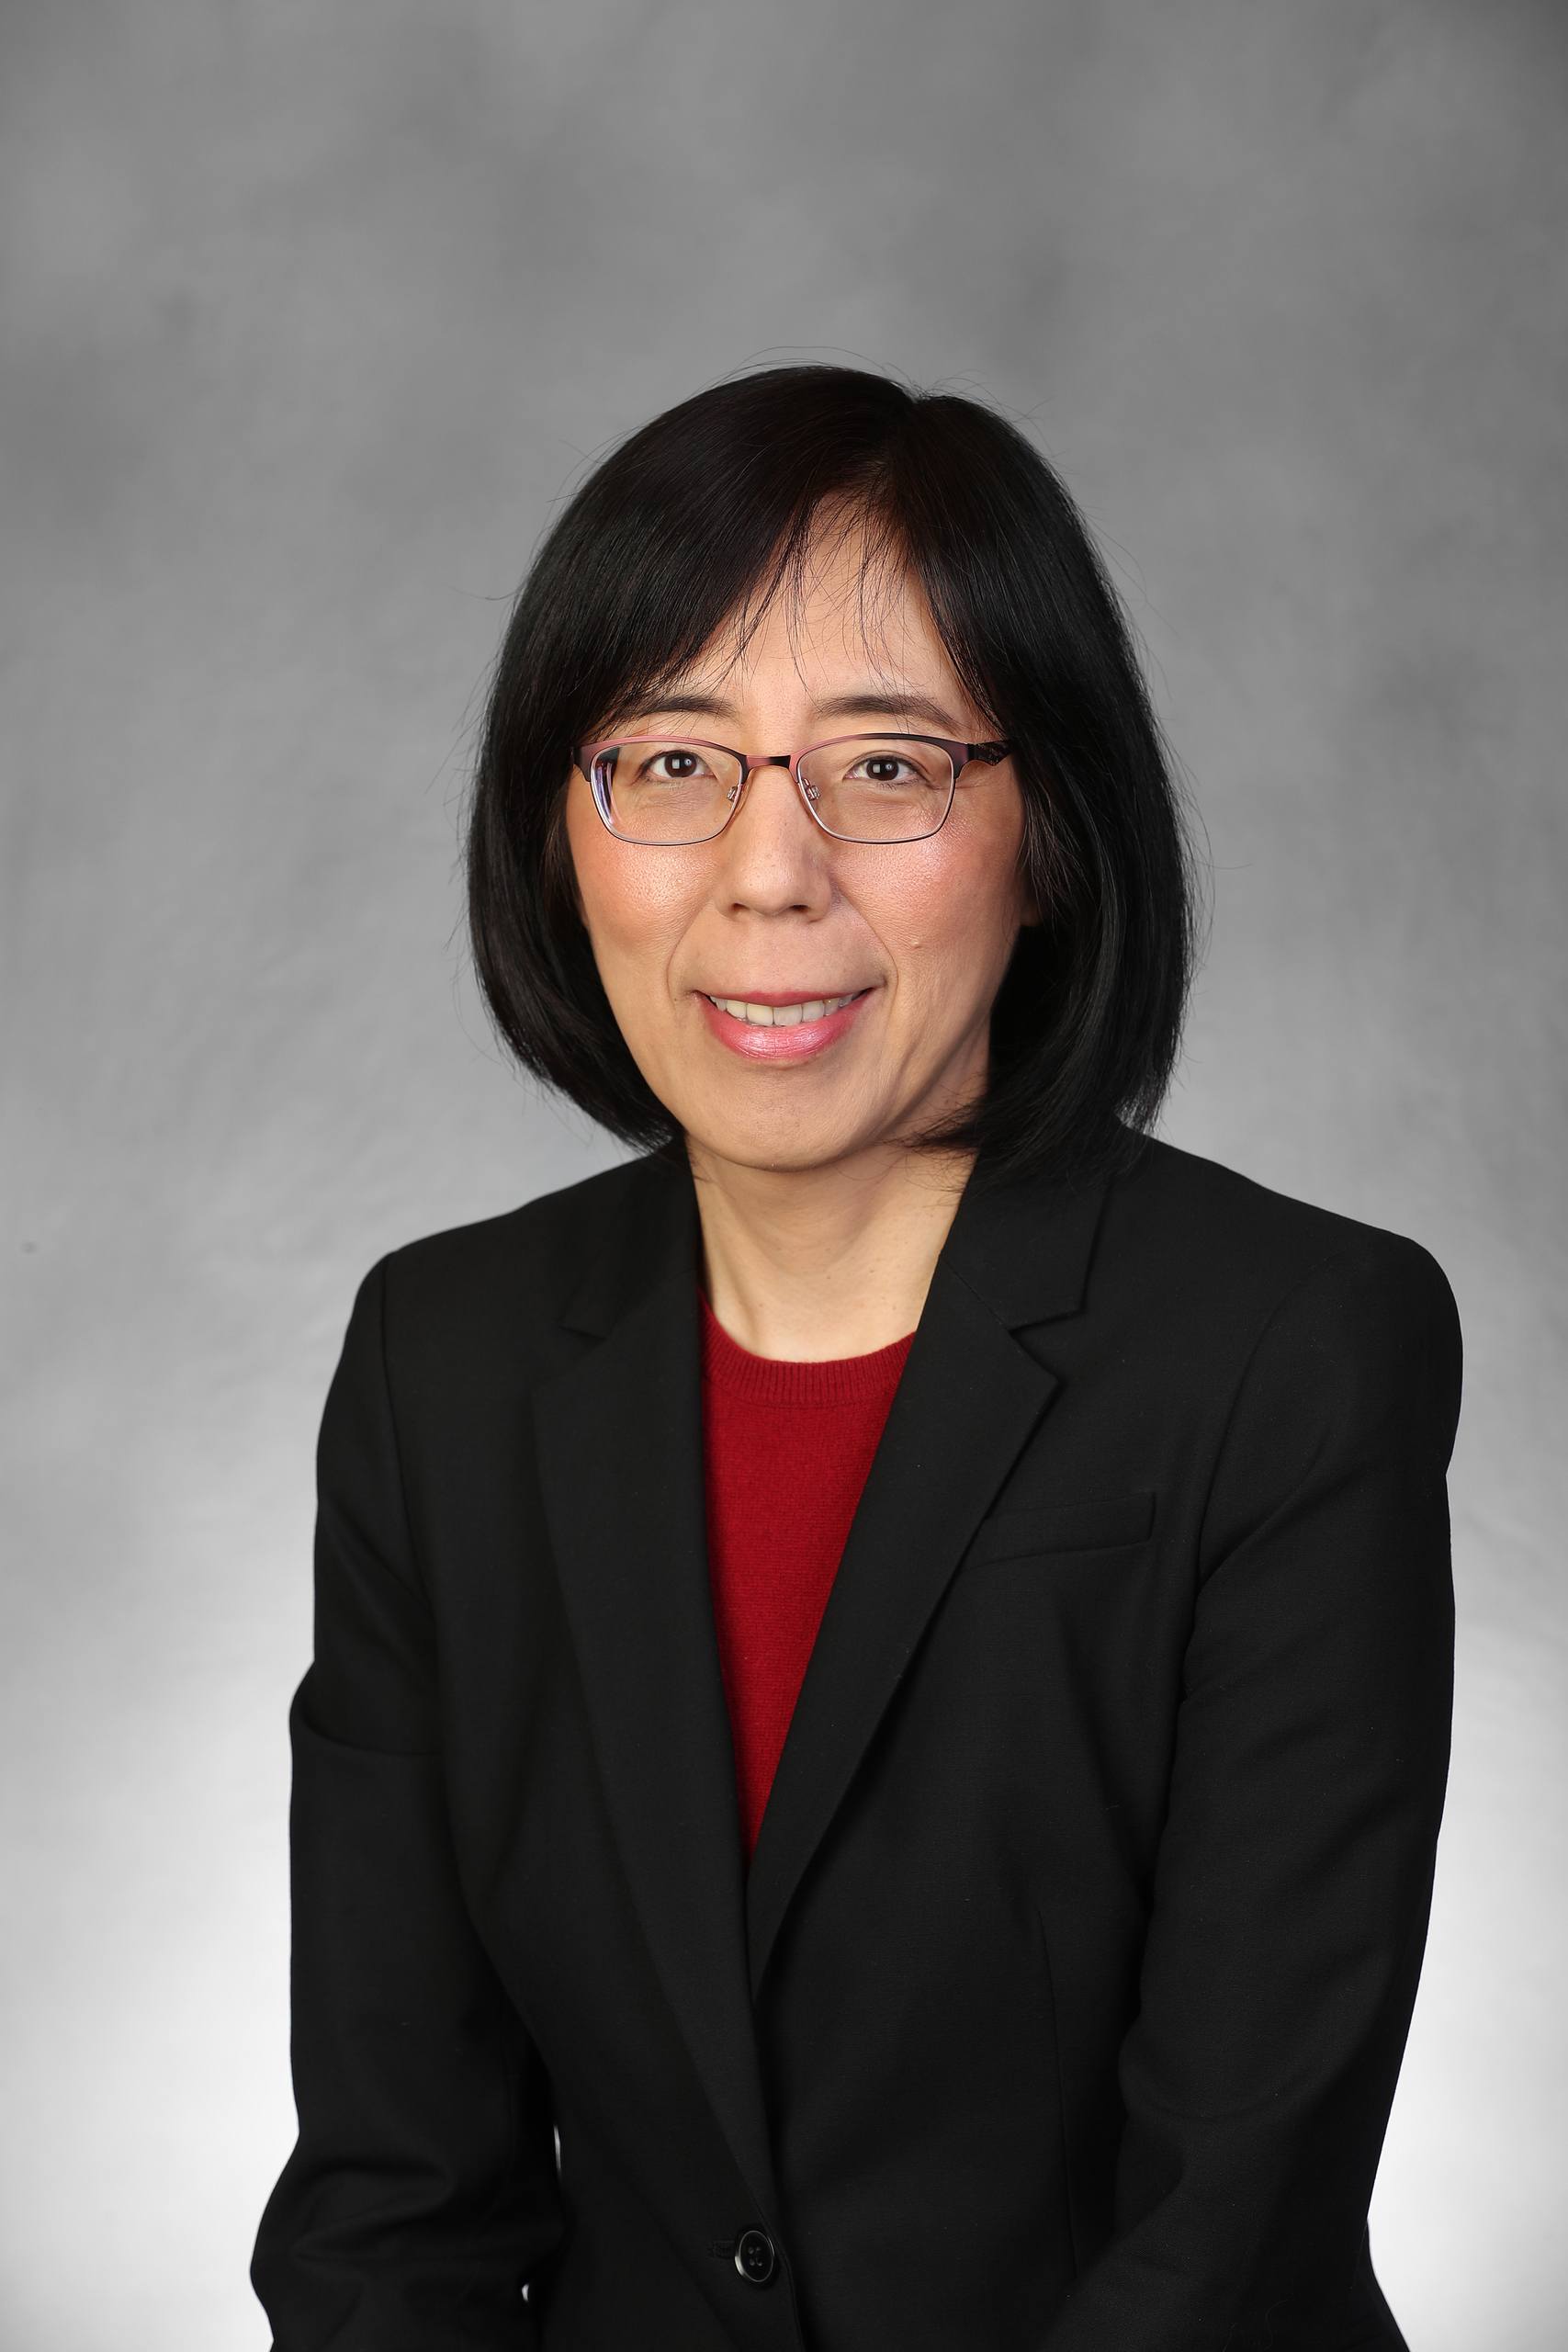 Dr. I-Fen Lin